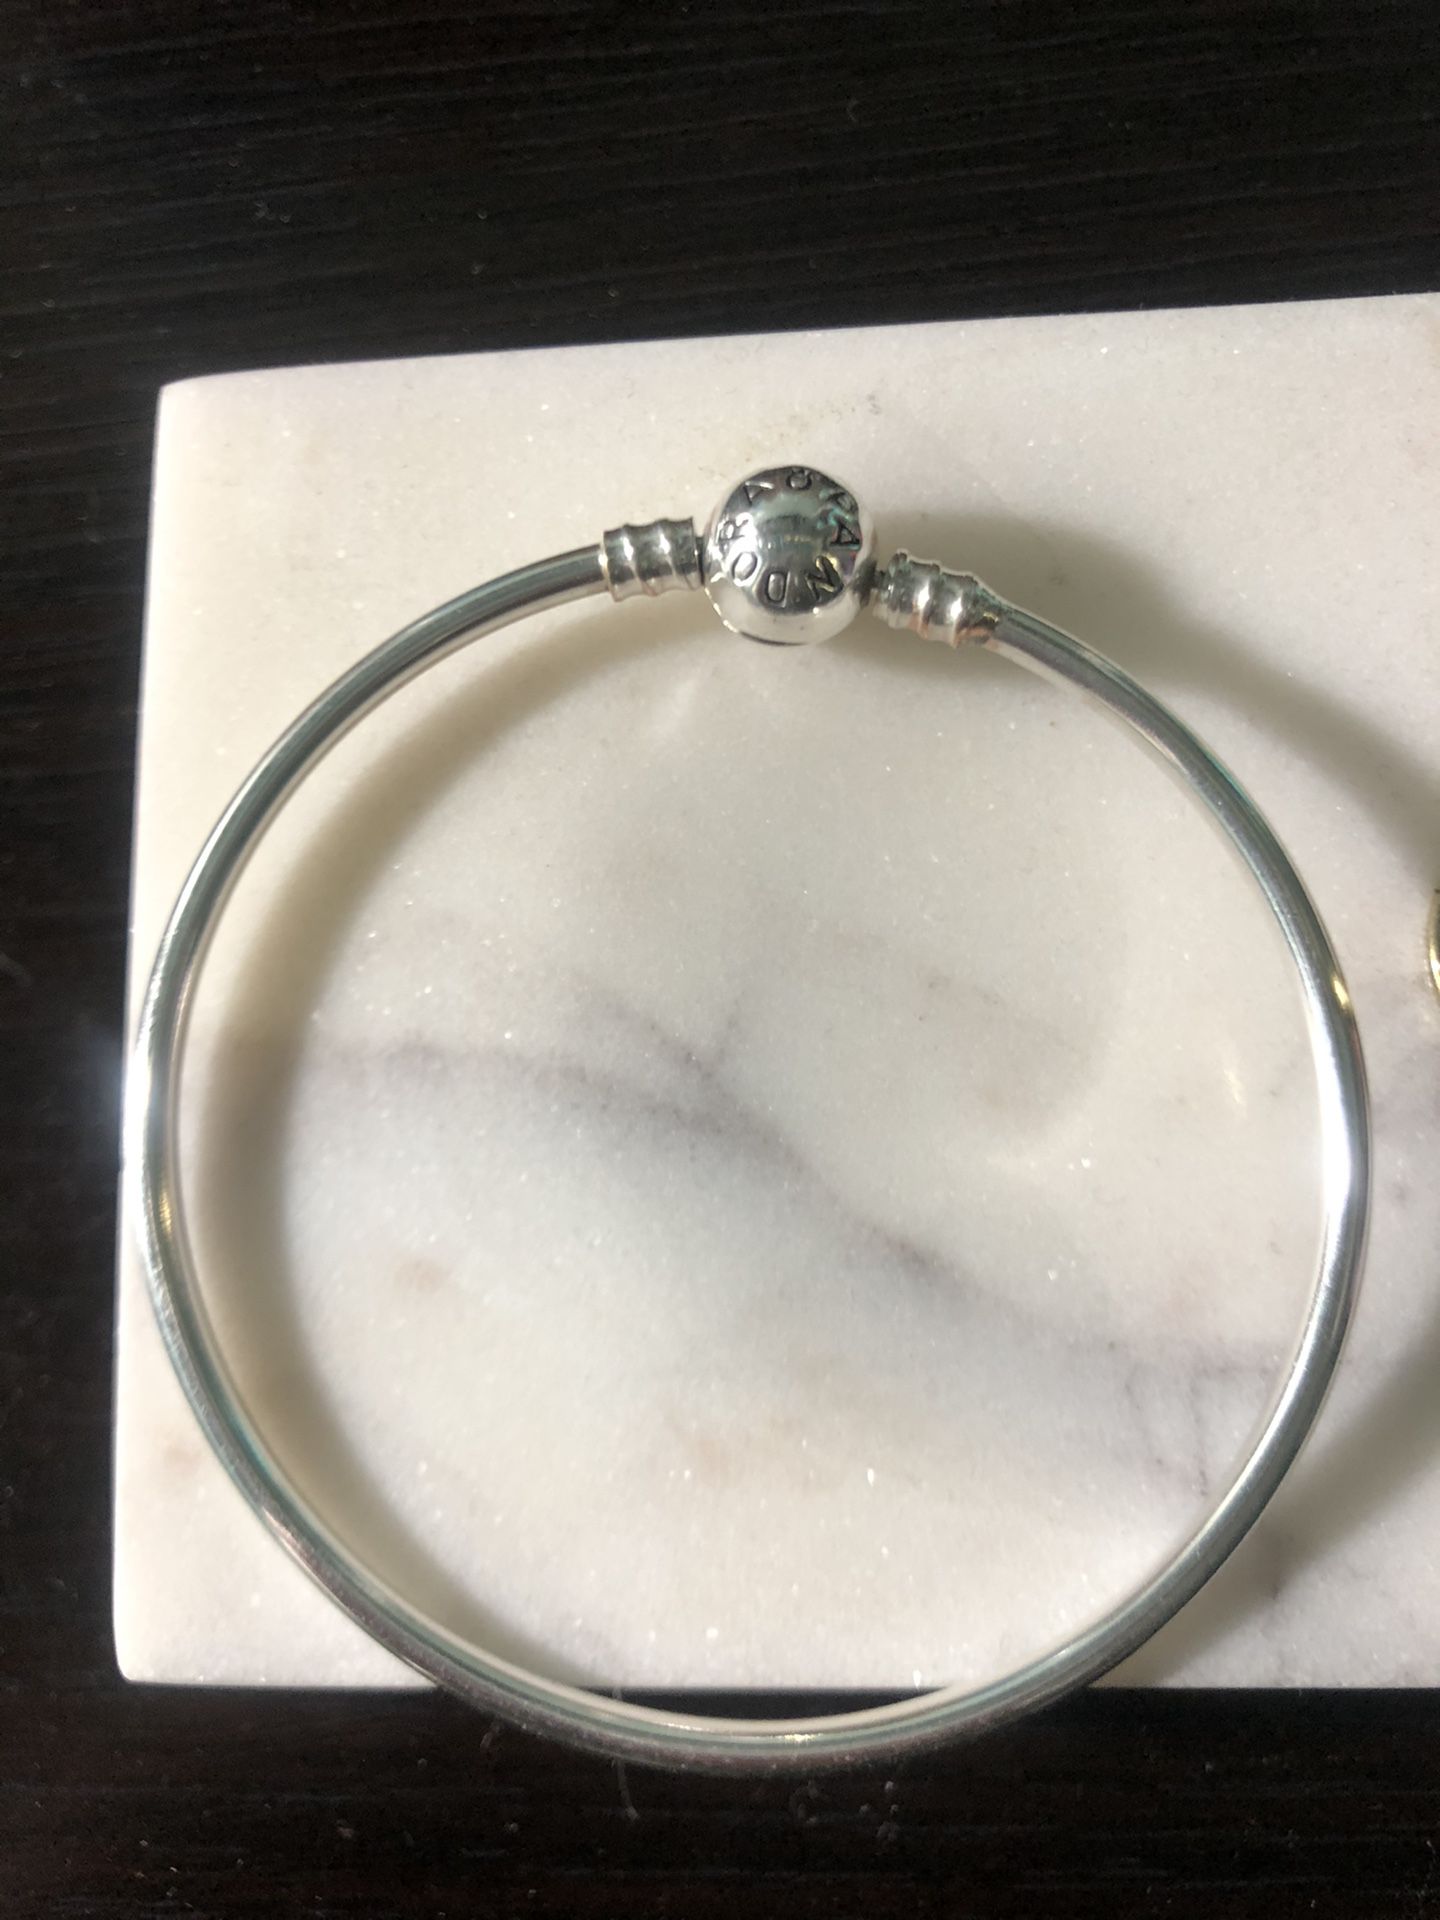 Pandora bracelet